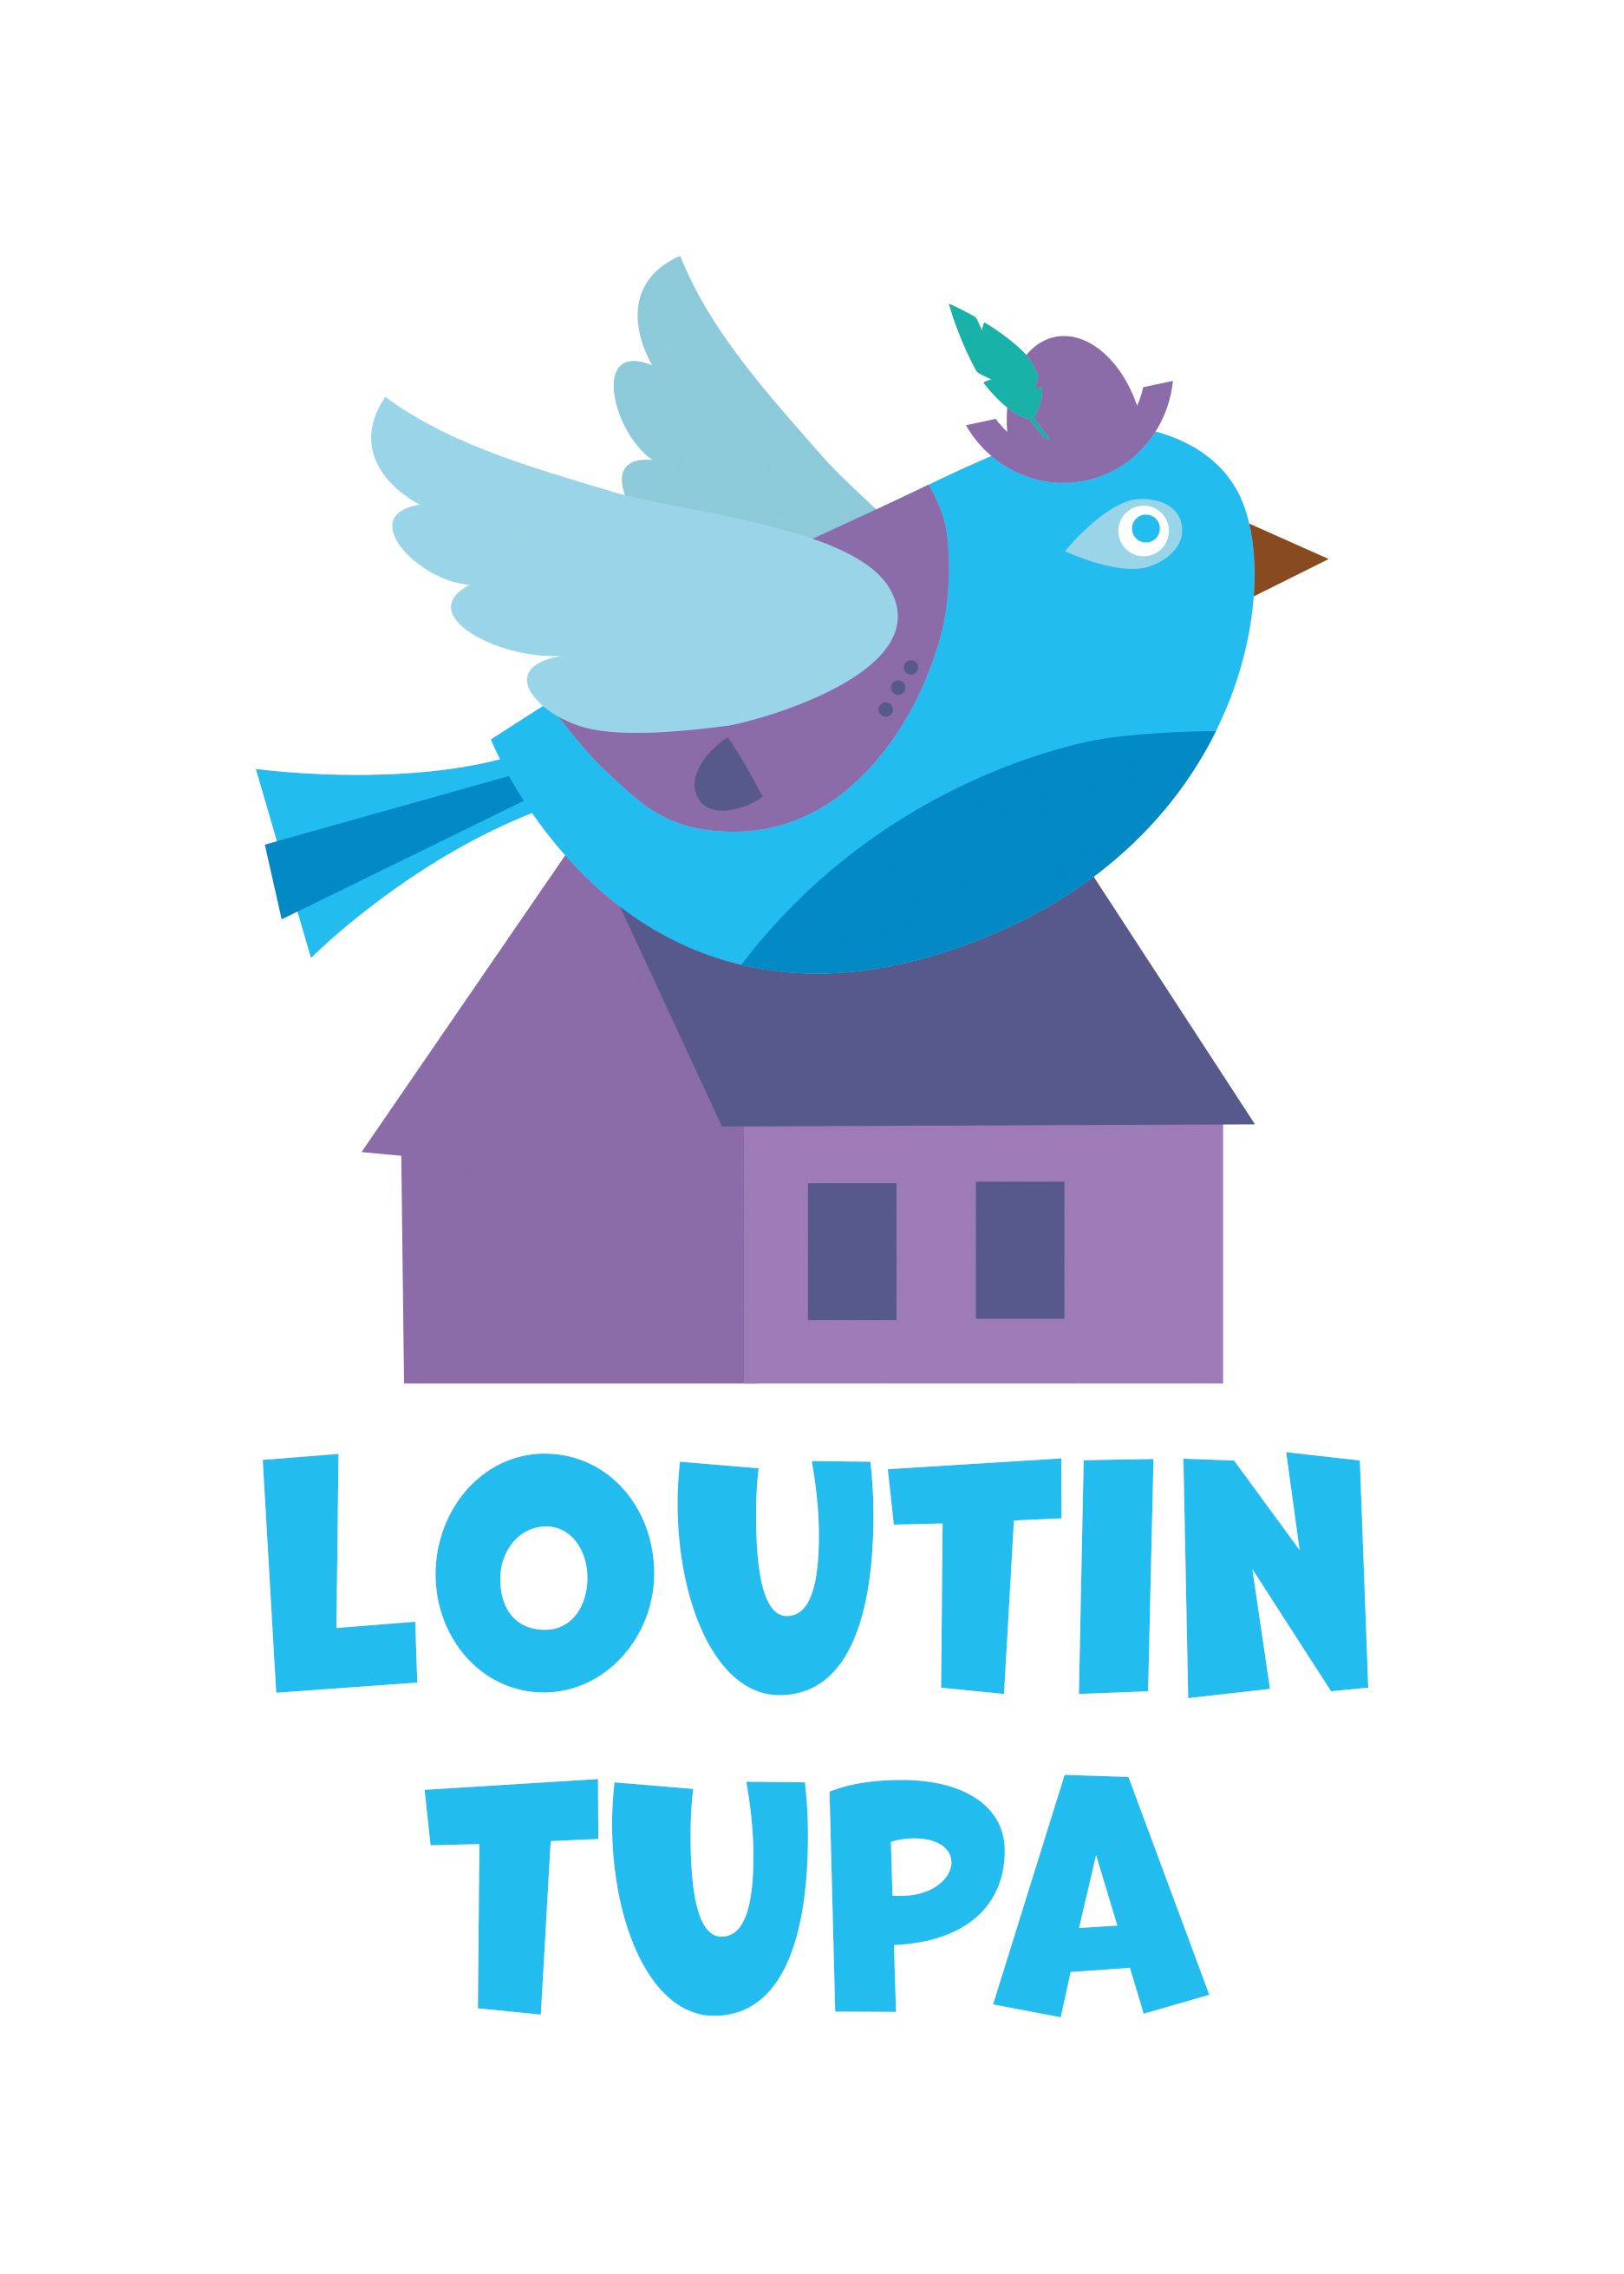 Loutin logo